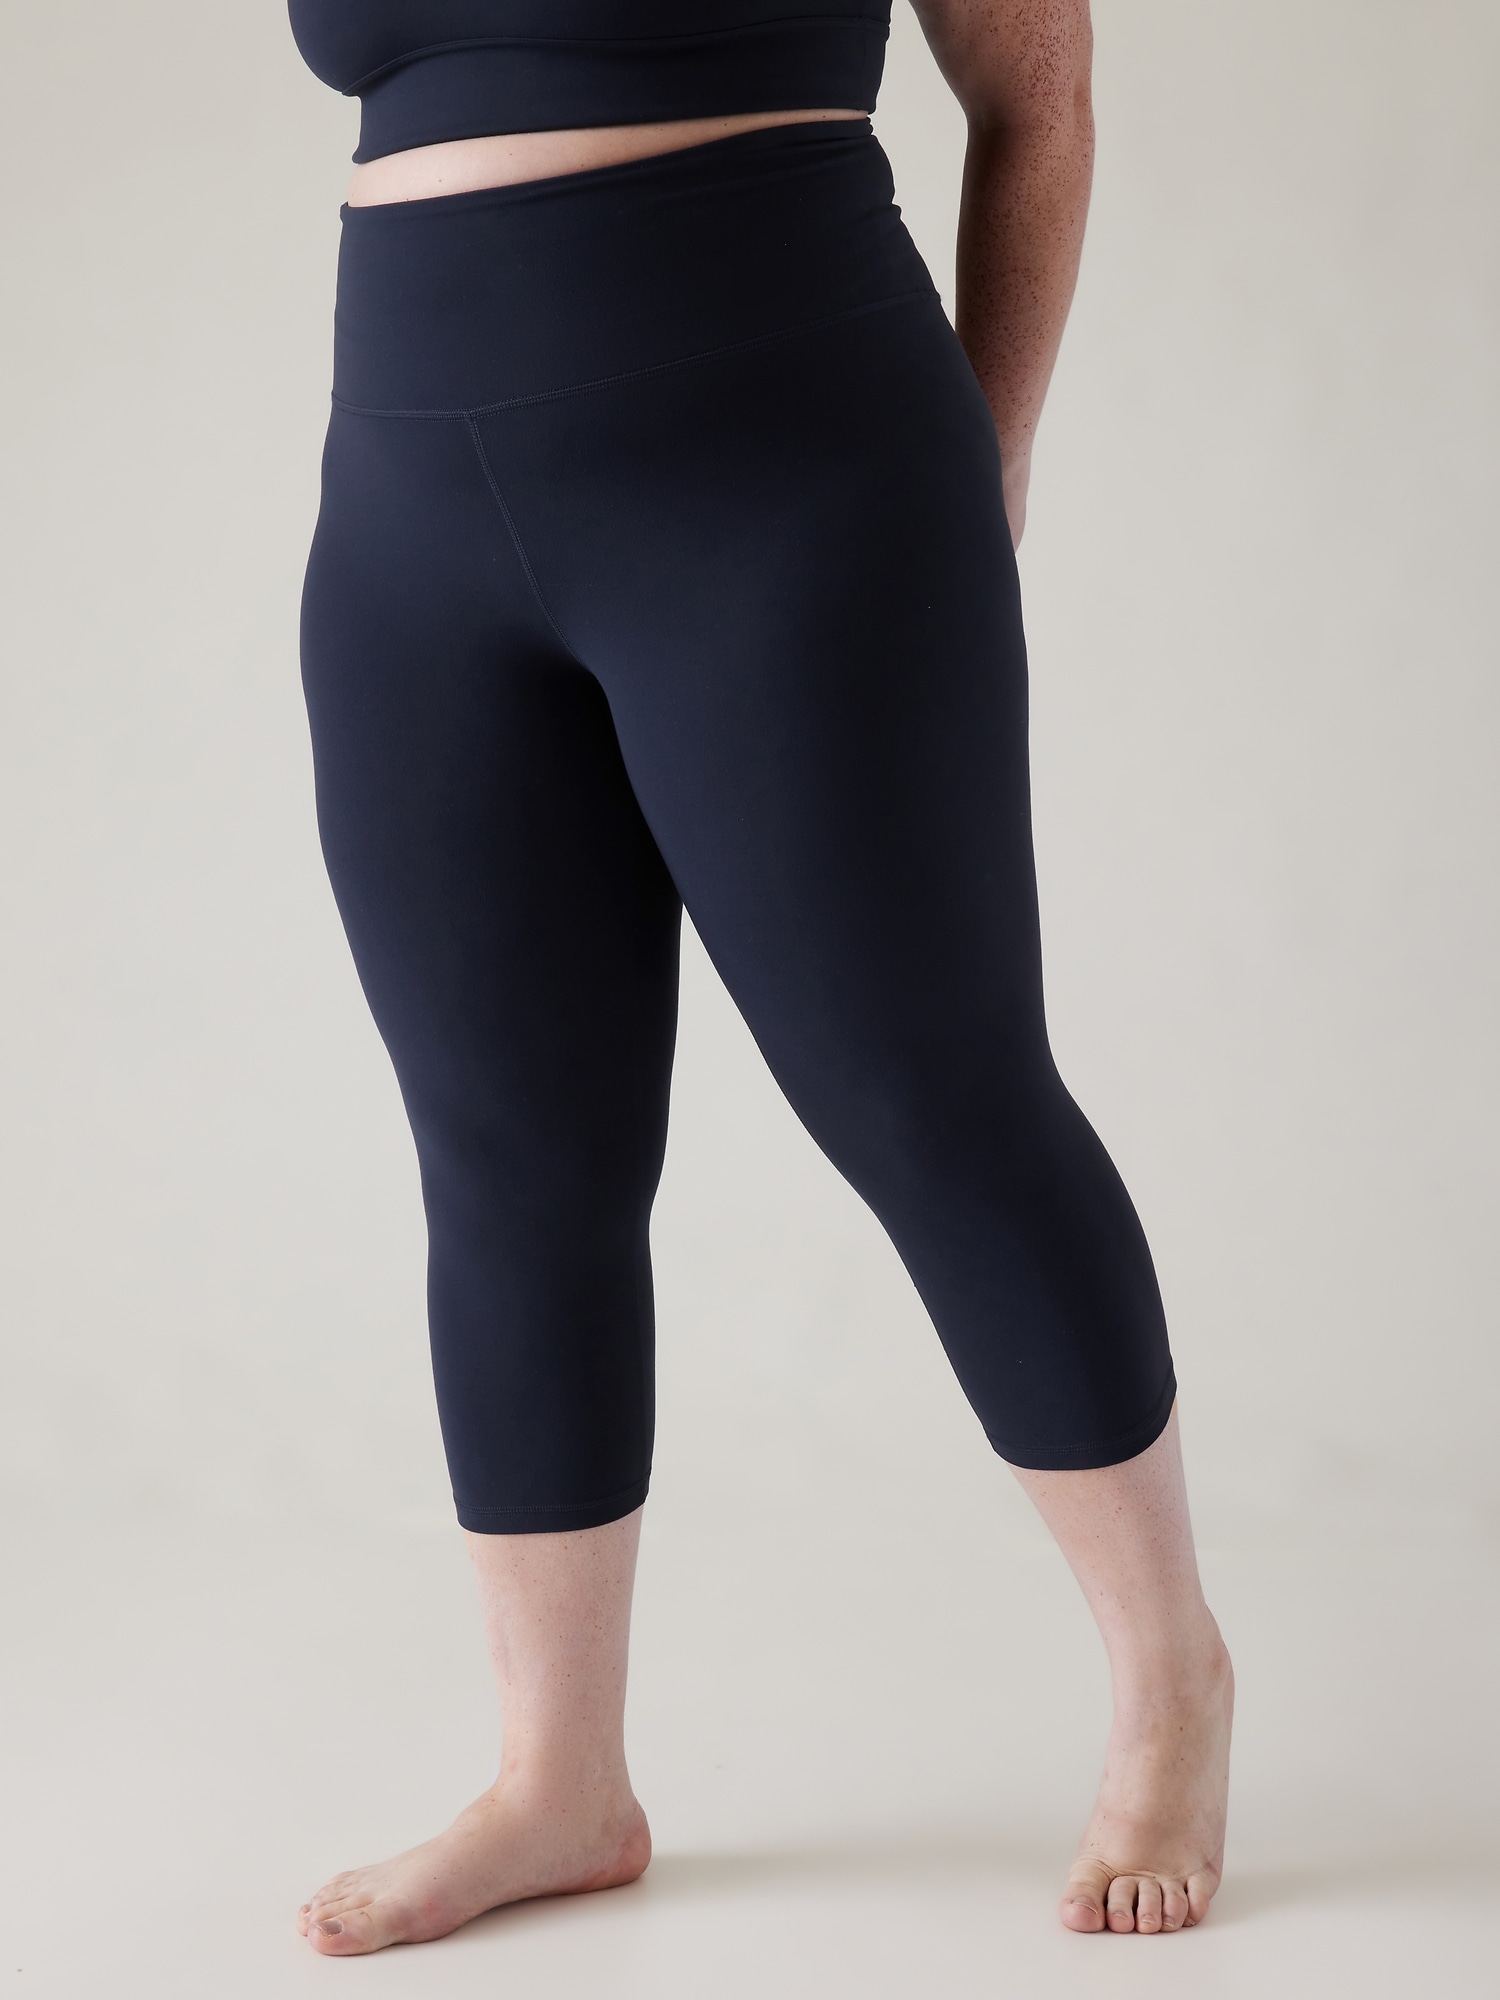 High Waisted Yoga LeggingsCapri & Full Length Pants (25 Inseam, Peak Blue,  XXL) 